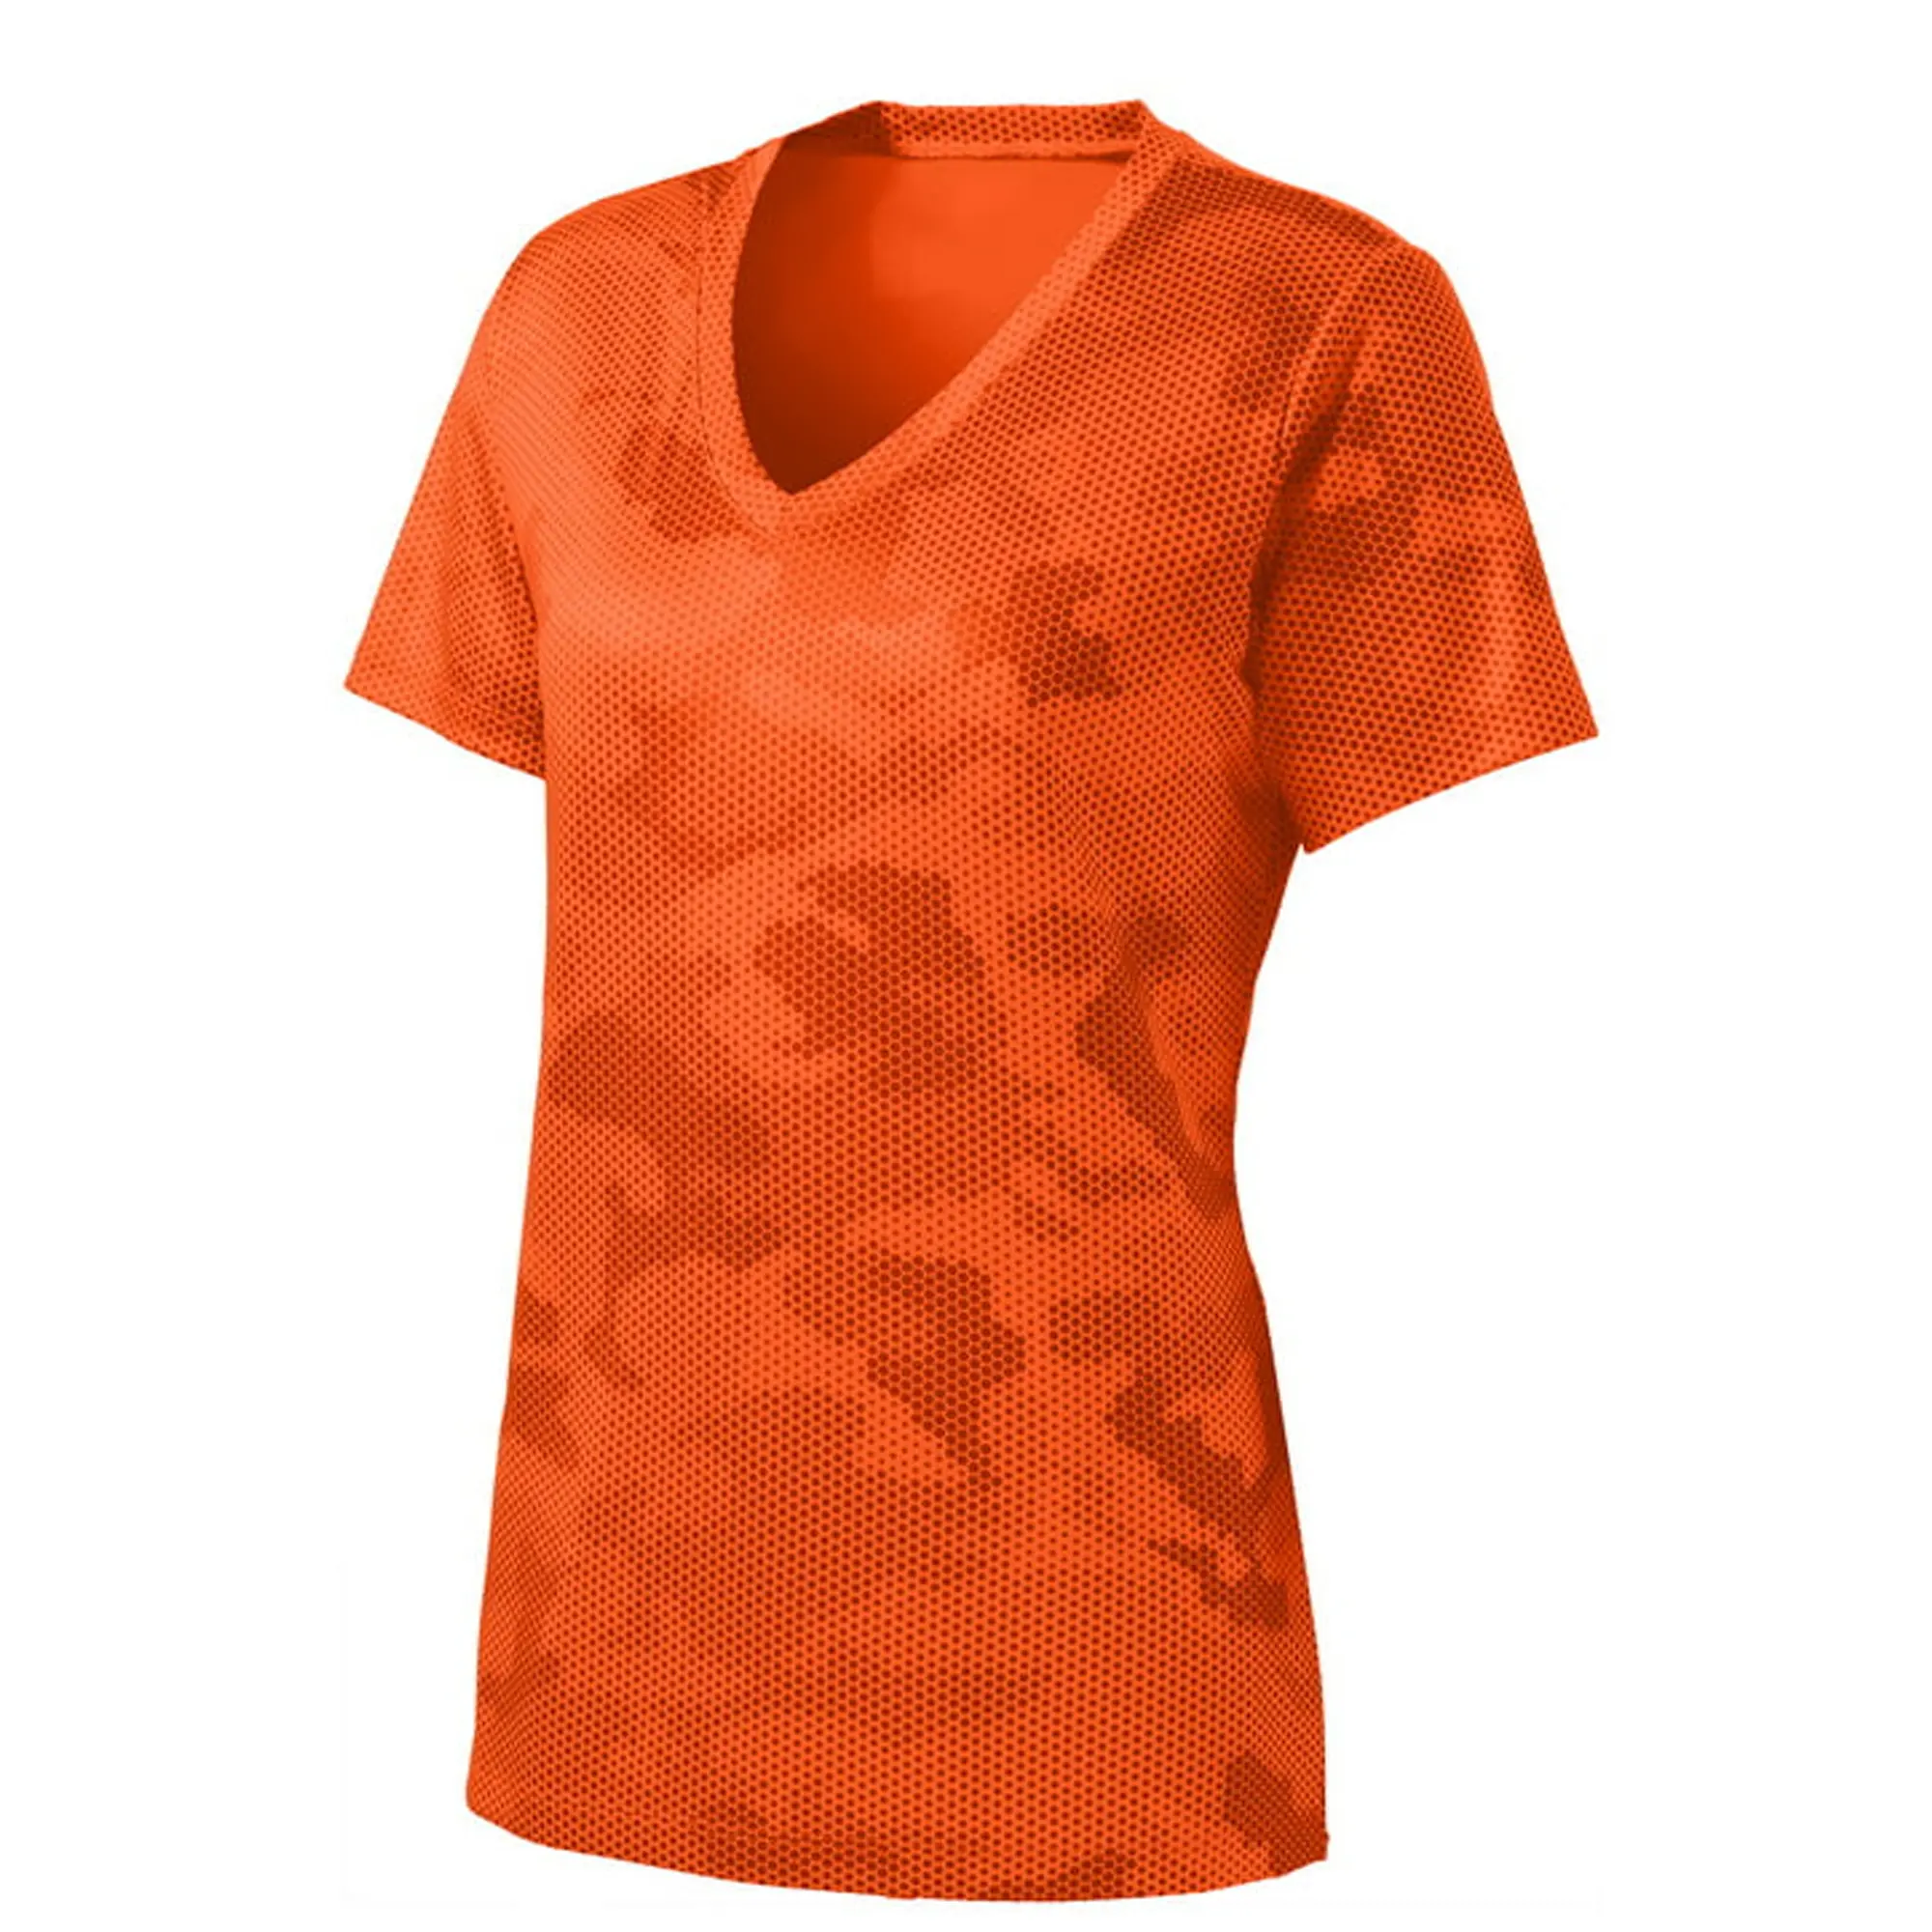 Großhandels preis Damen V-Ausschnitt Blank T-Shirts Sublimation druck Beste Qualität Frauen T-Shirts Hersteller Mit 100% QC